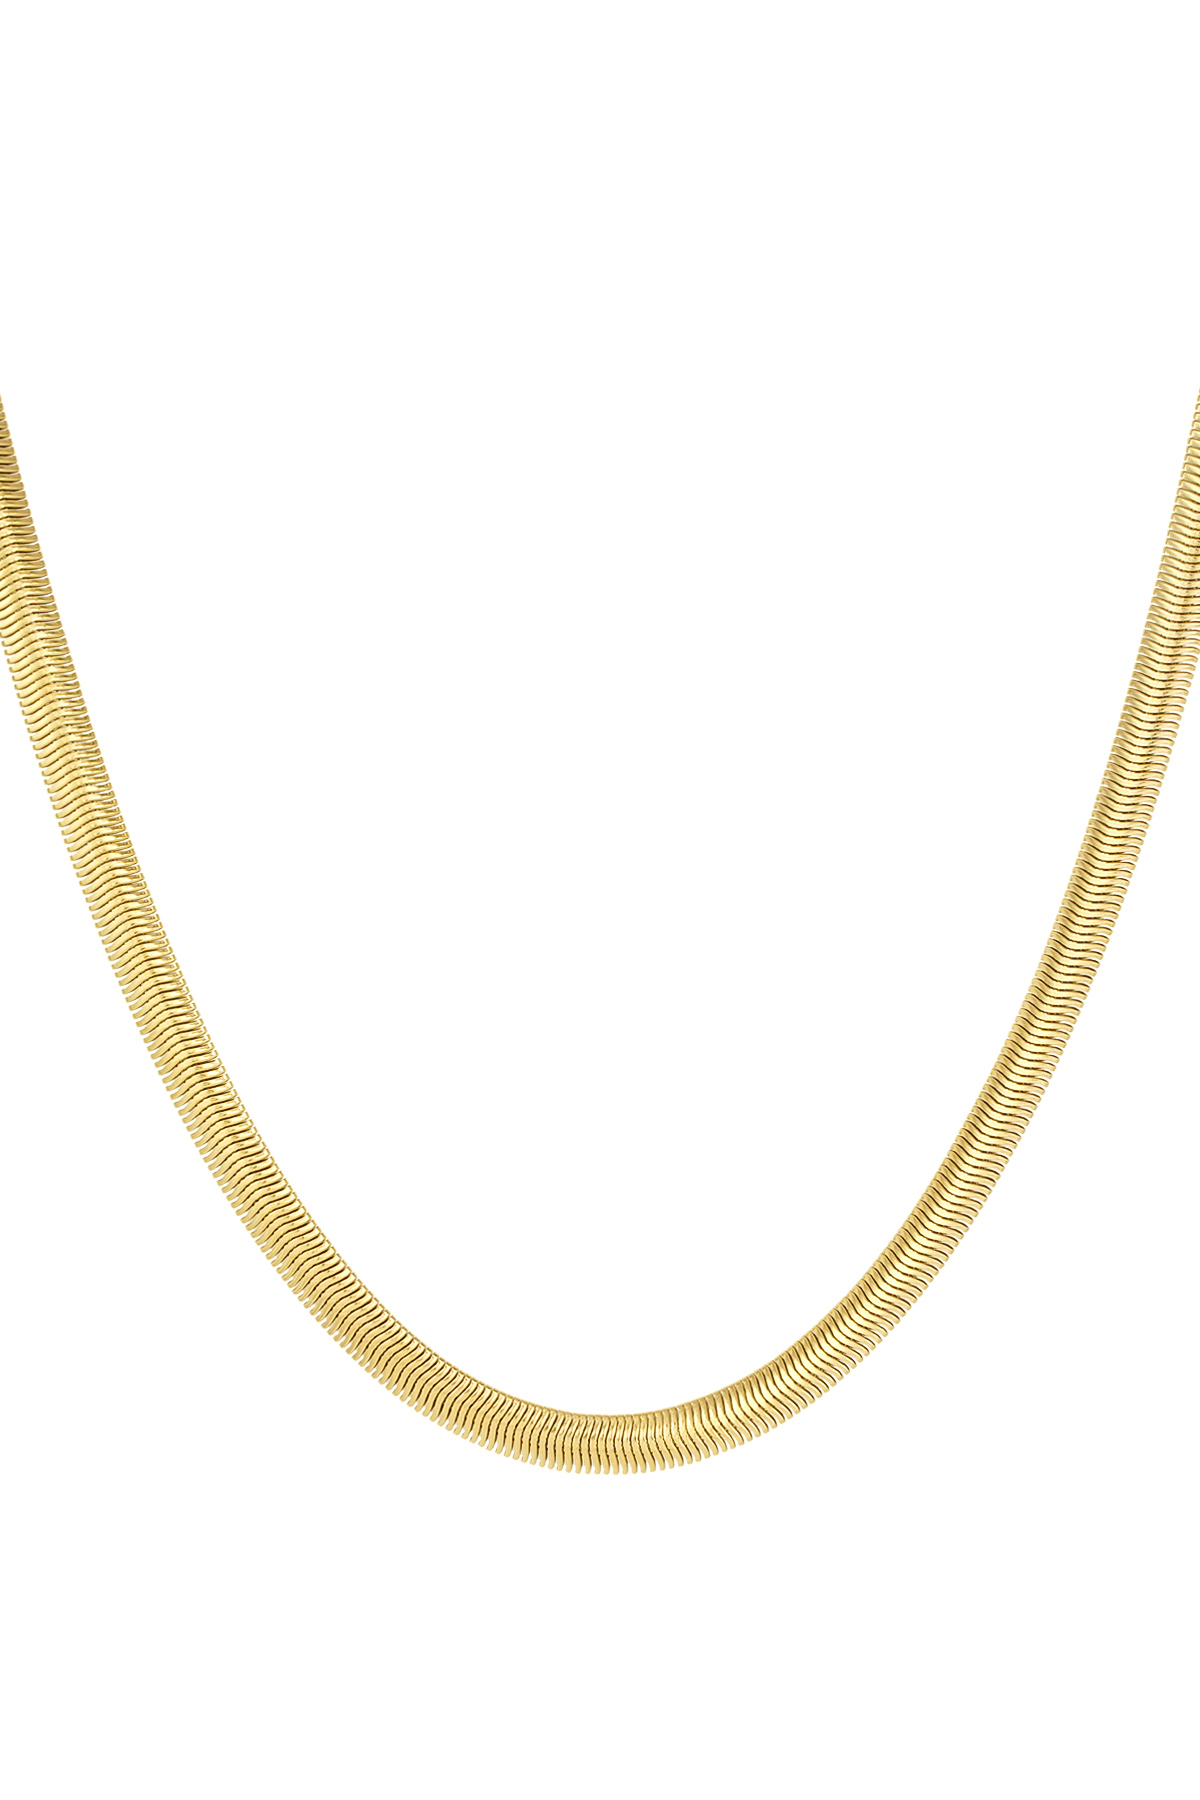 Unisex-Halskette flach mit Struktur - Gold